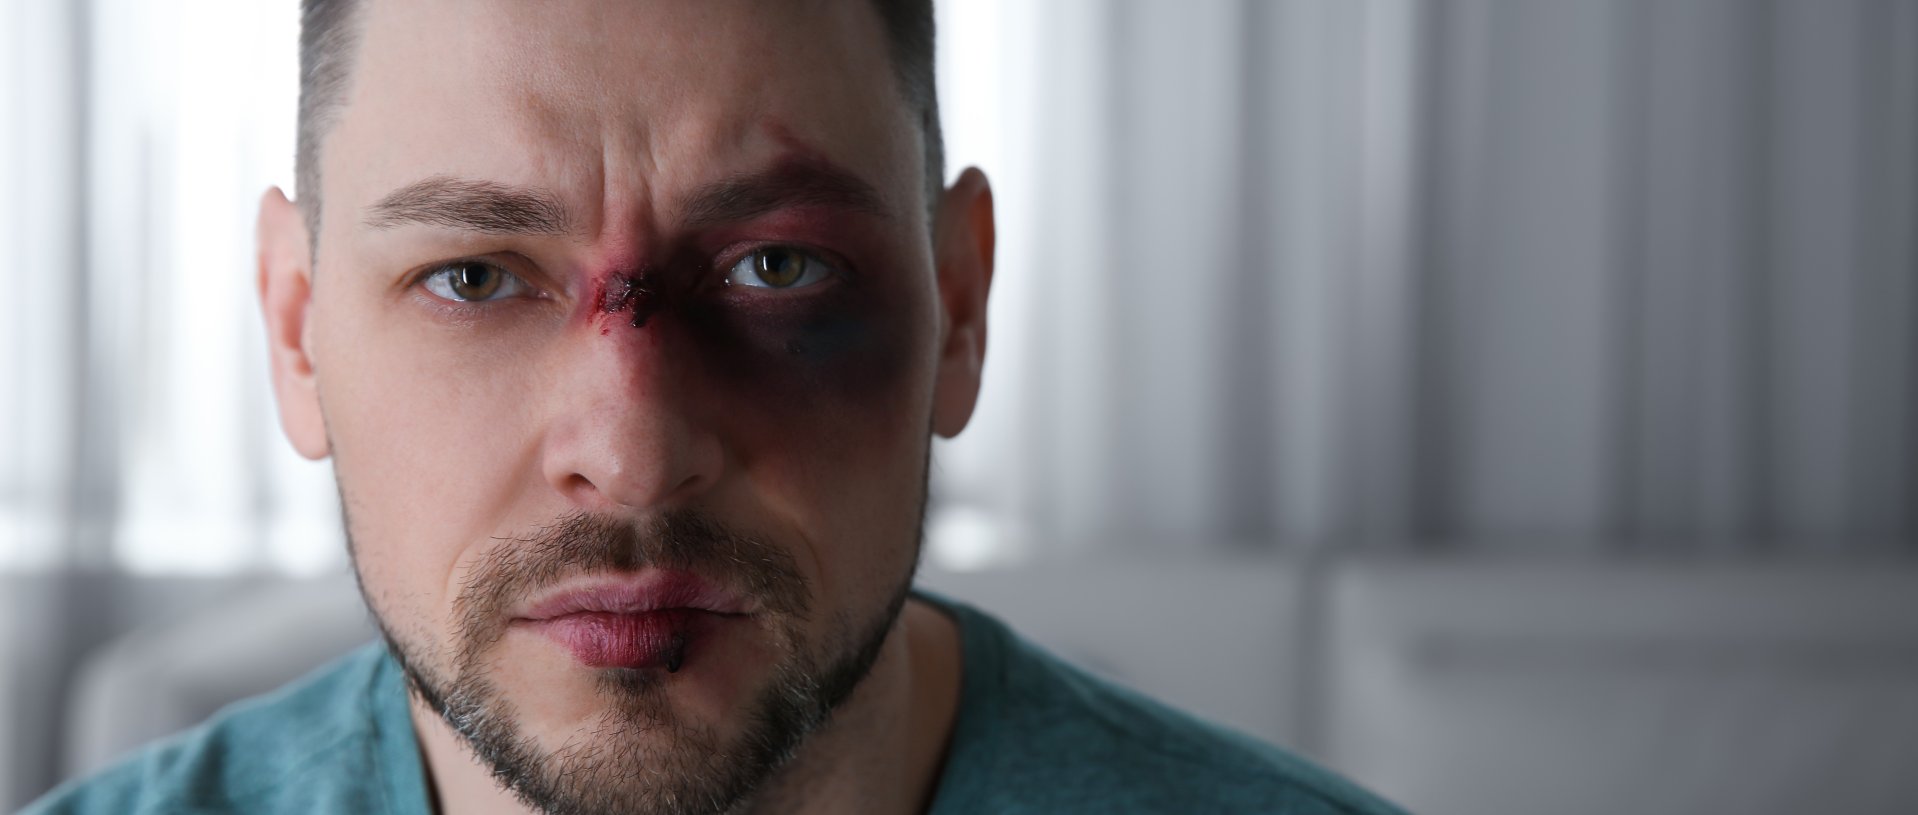 man with facial injuries | Facial Trauma Plastic Surgery